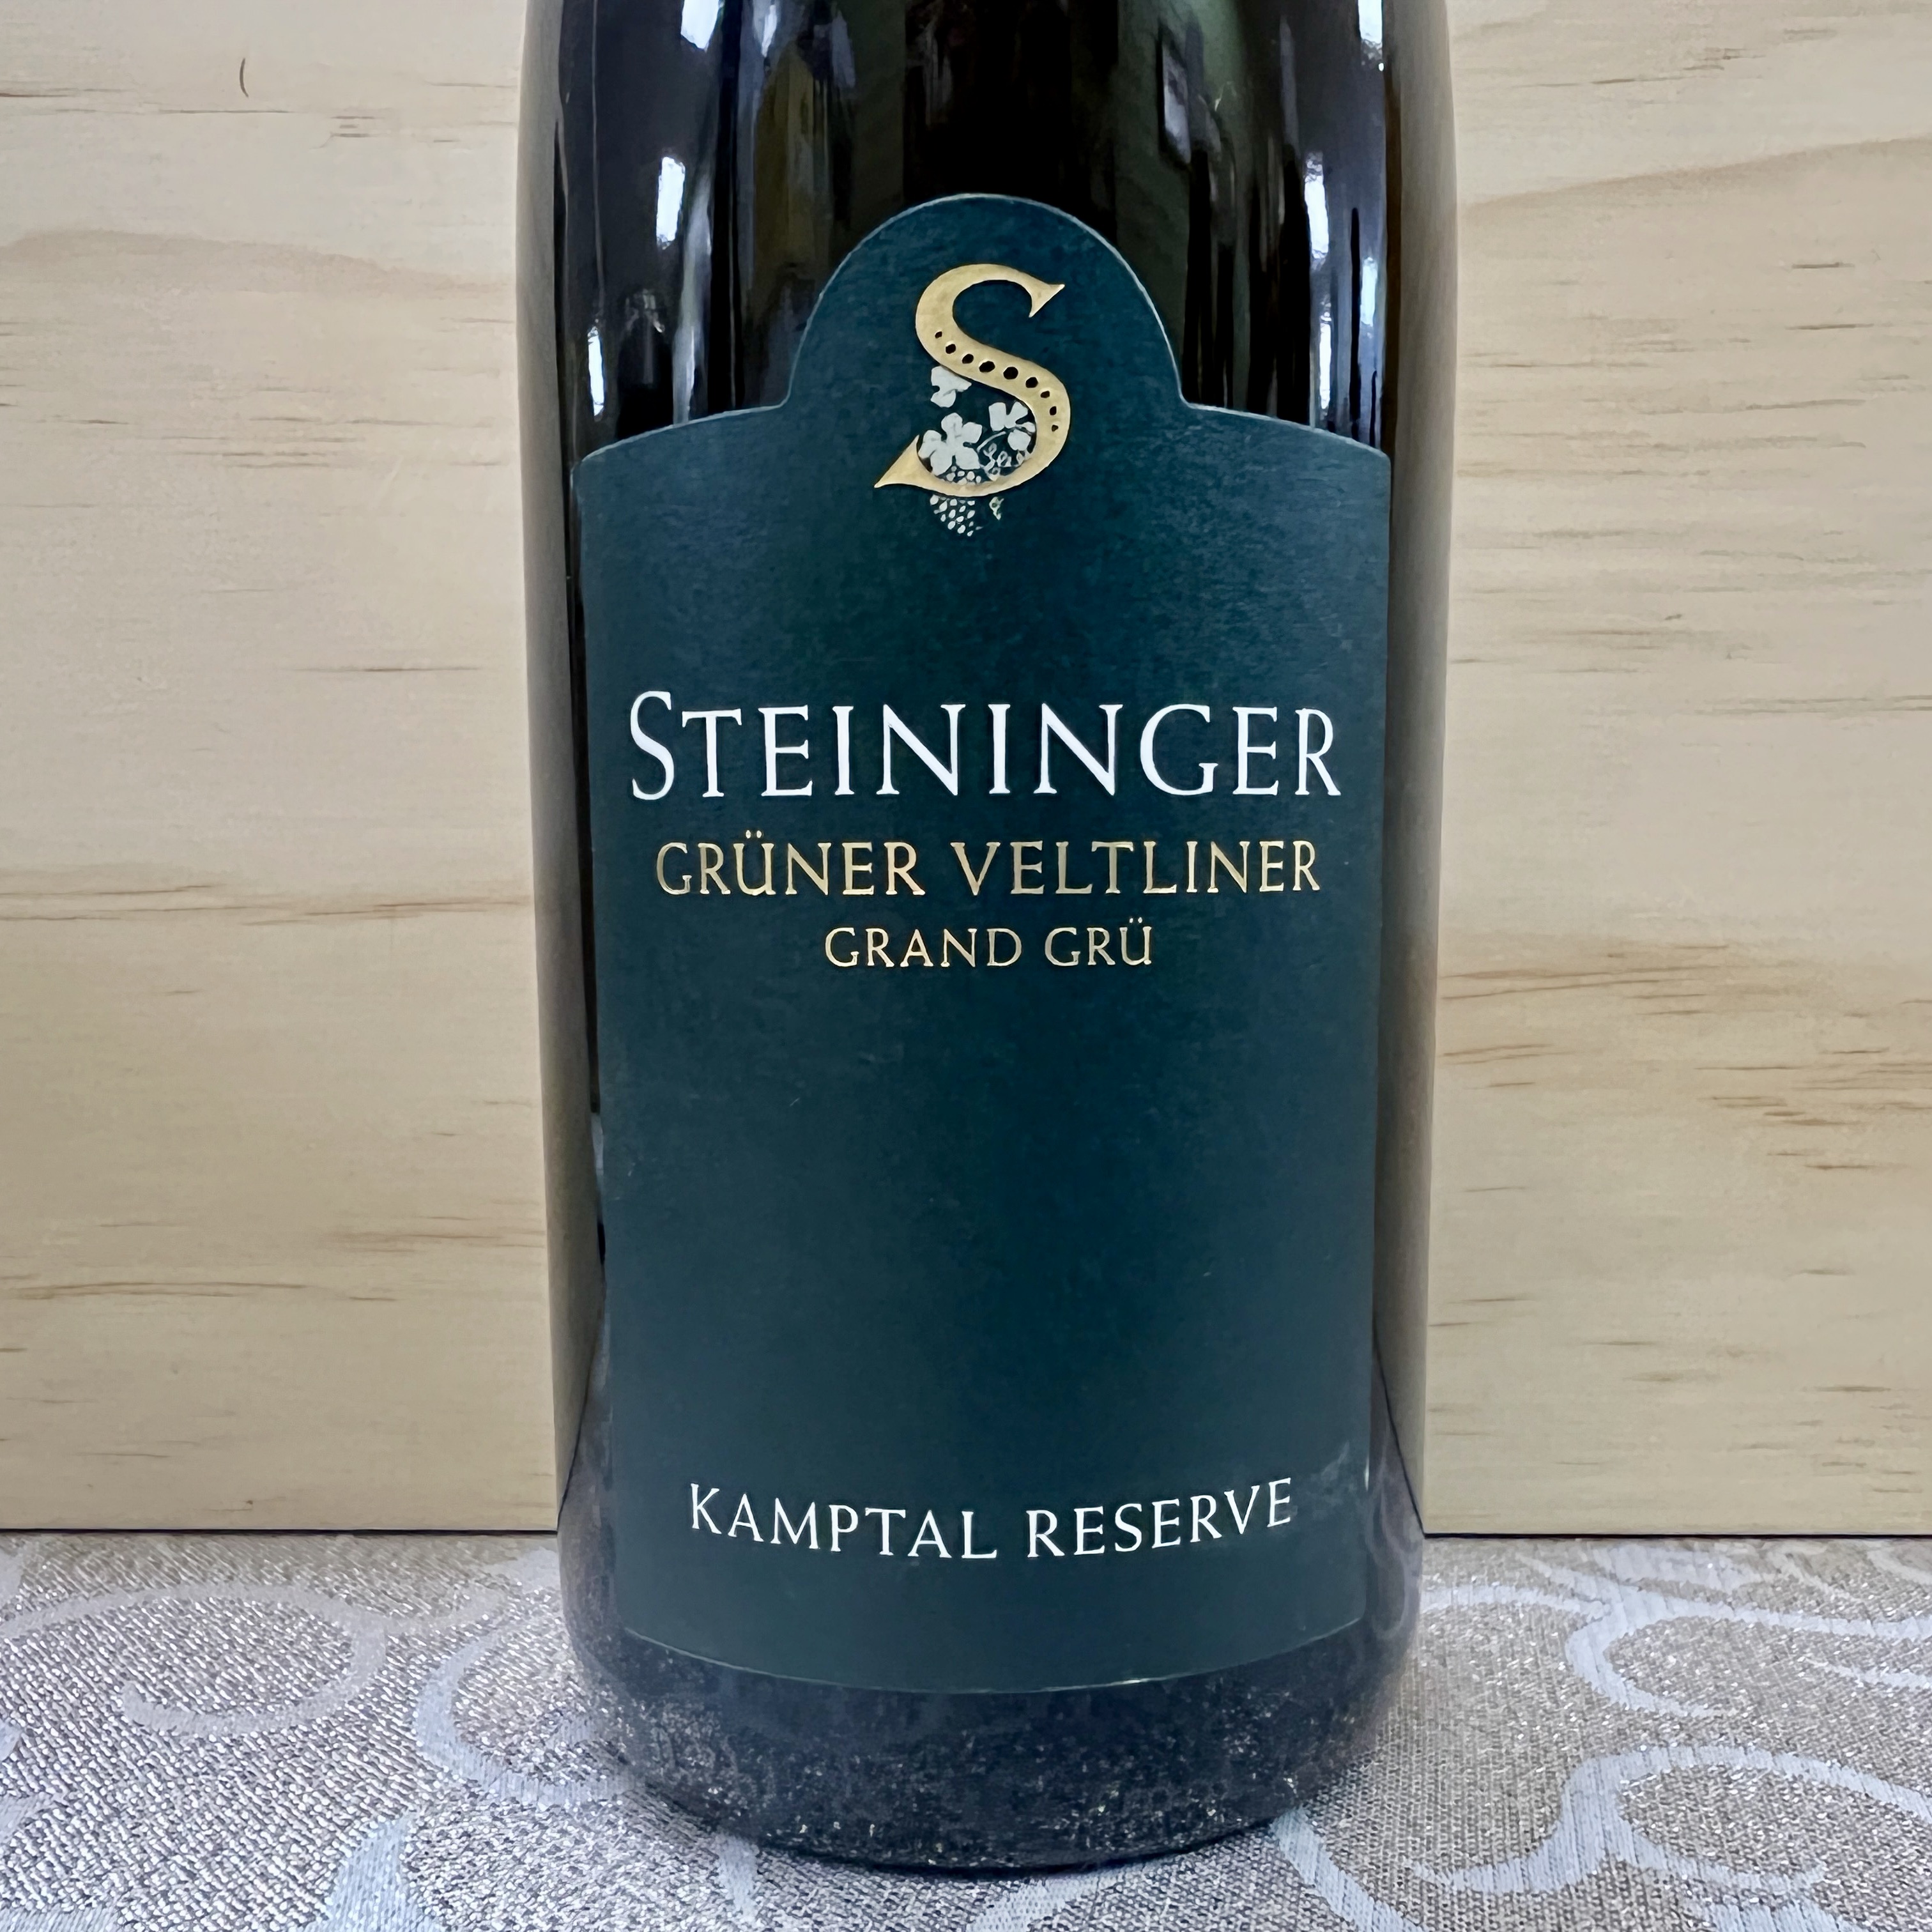 Steininger Gruner Veltliner Grand Cru Kamptal Reserve 2020